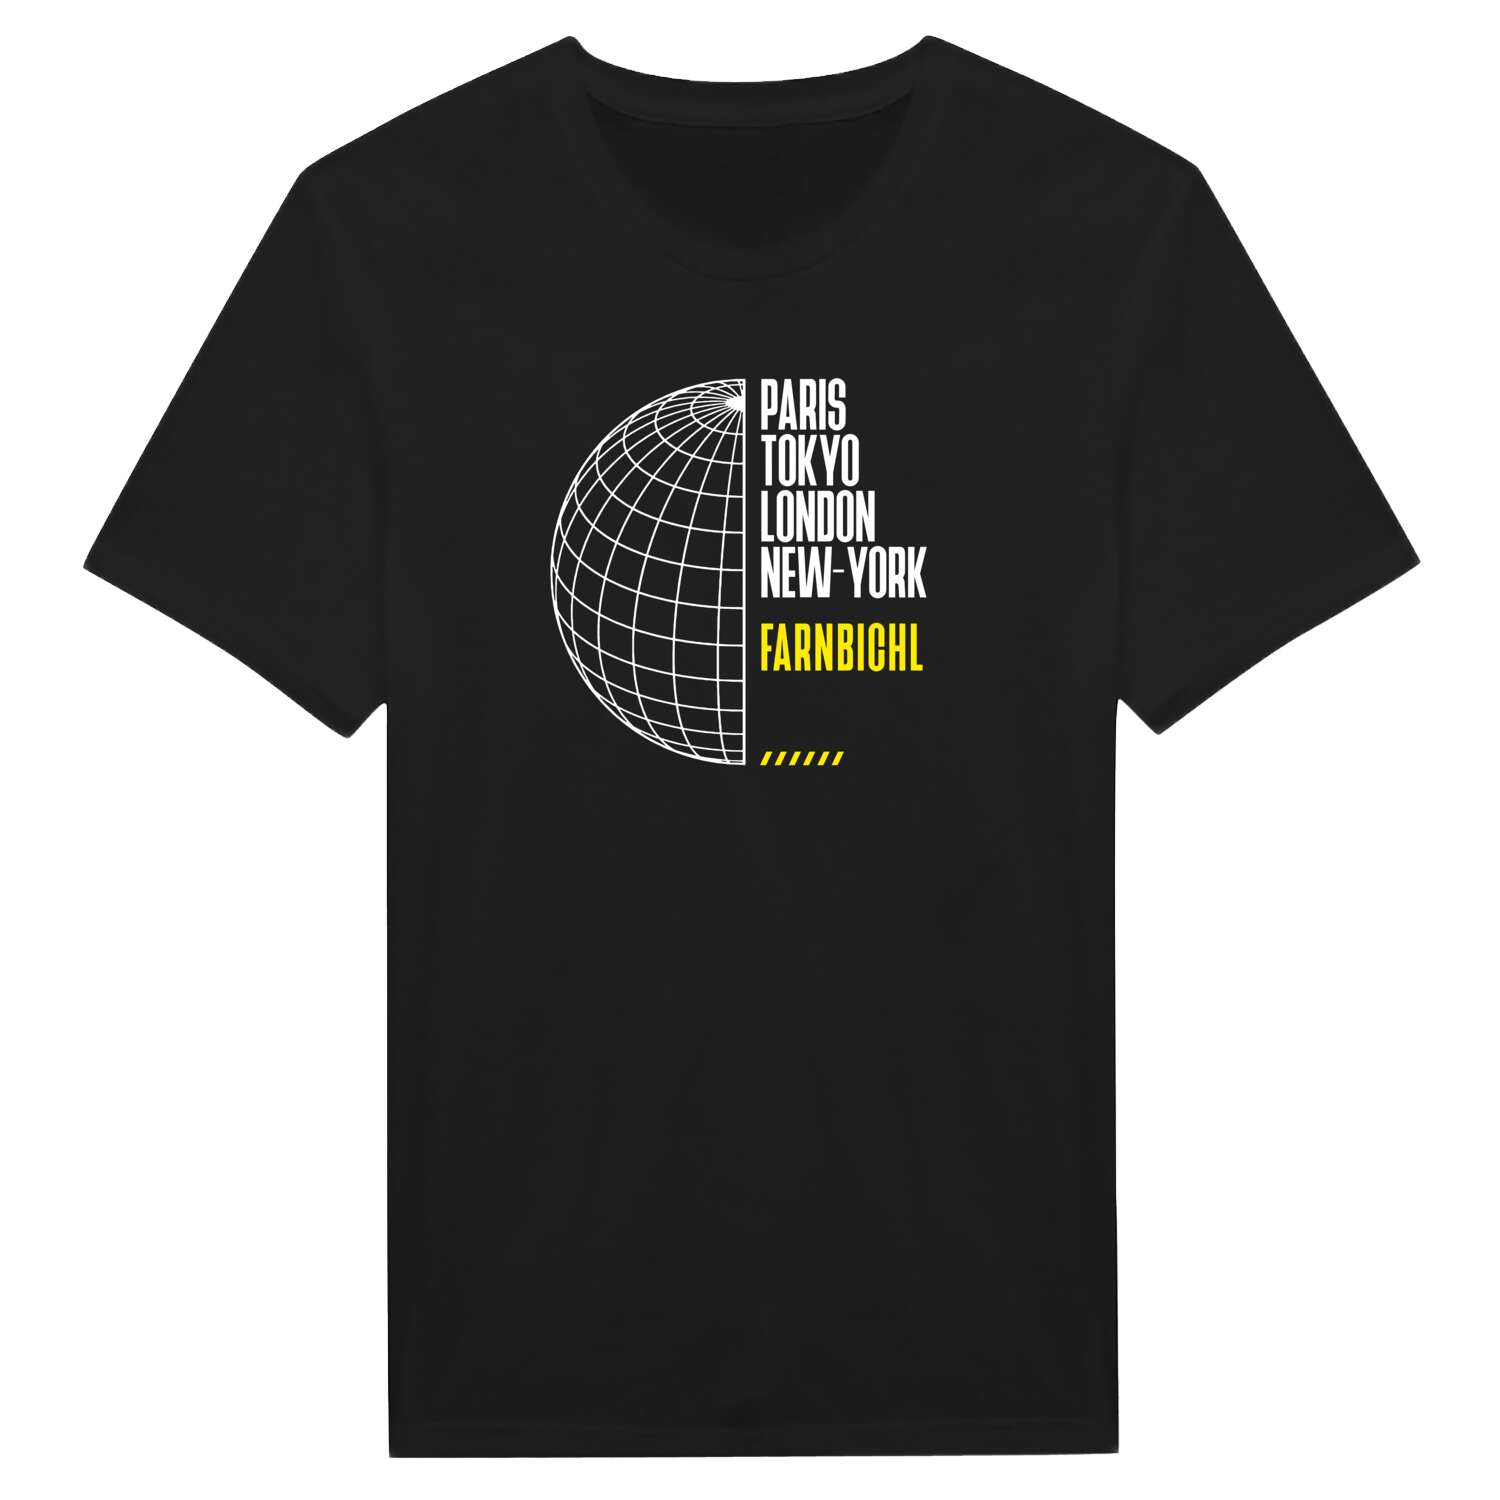 Farnbichl T-Shirt »Paris Tokyo London«